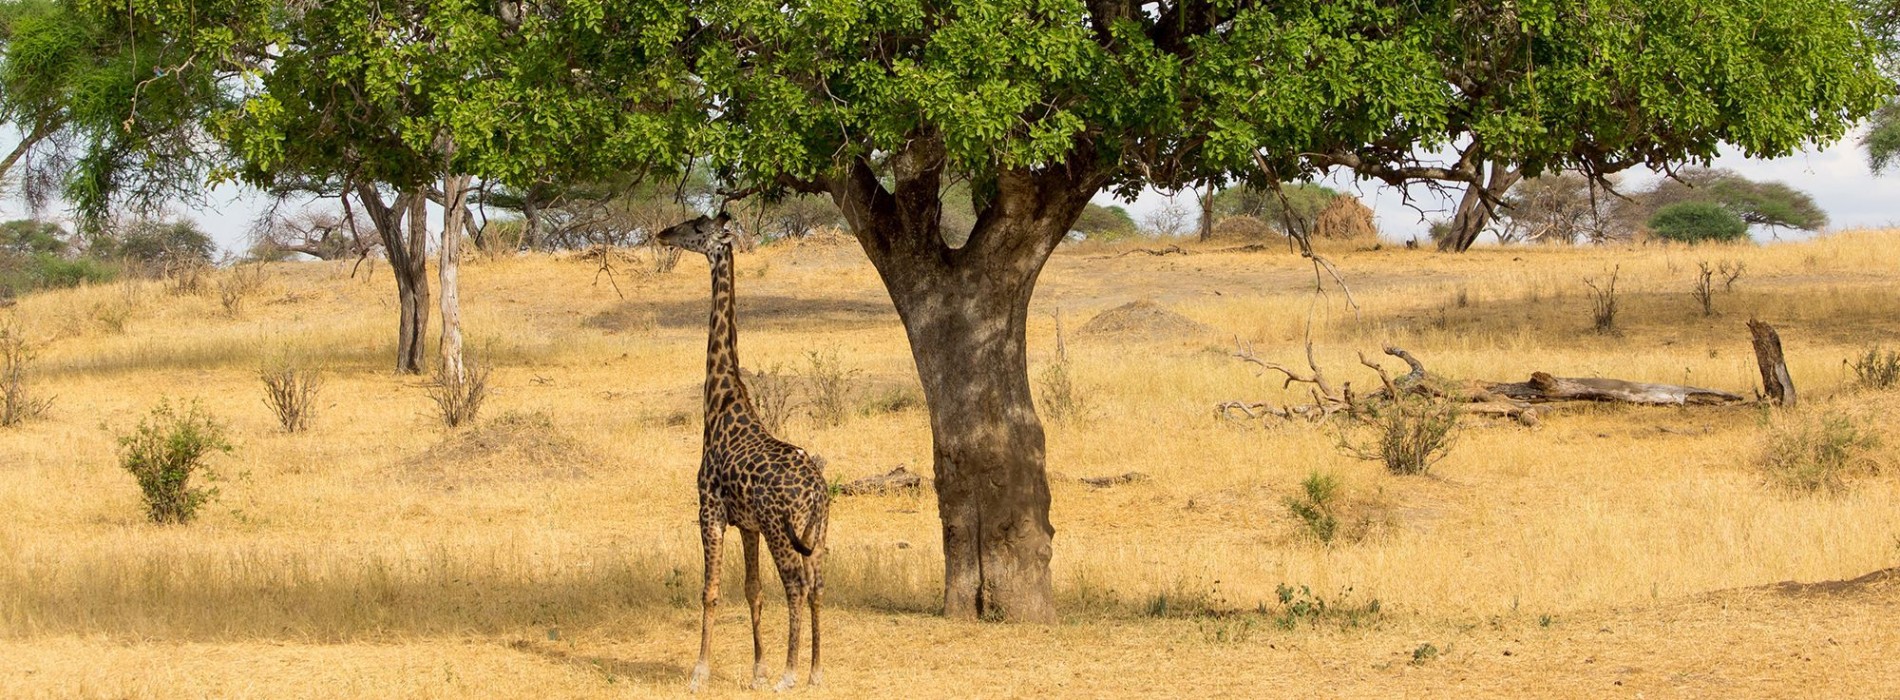 Giraffe taking shade from the African sun